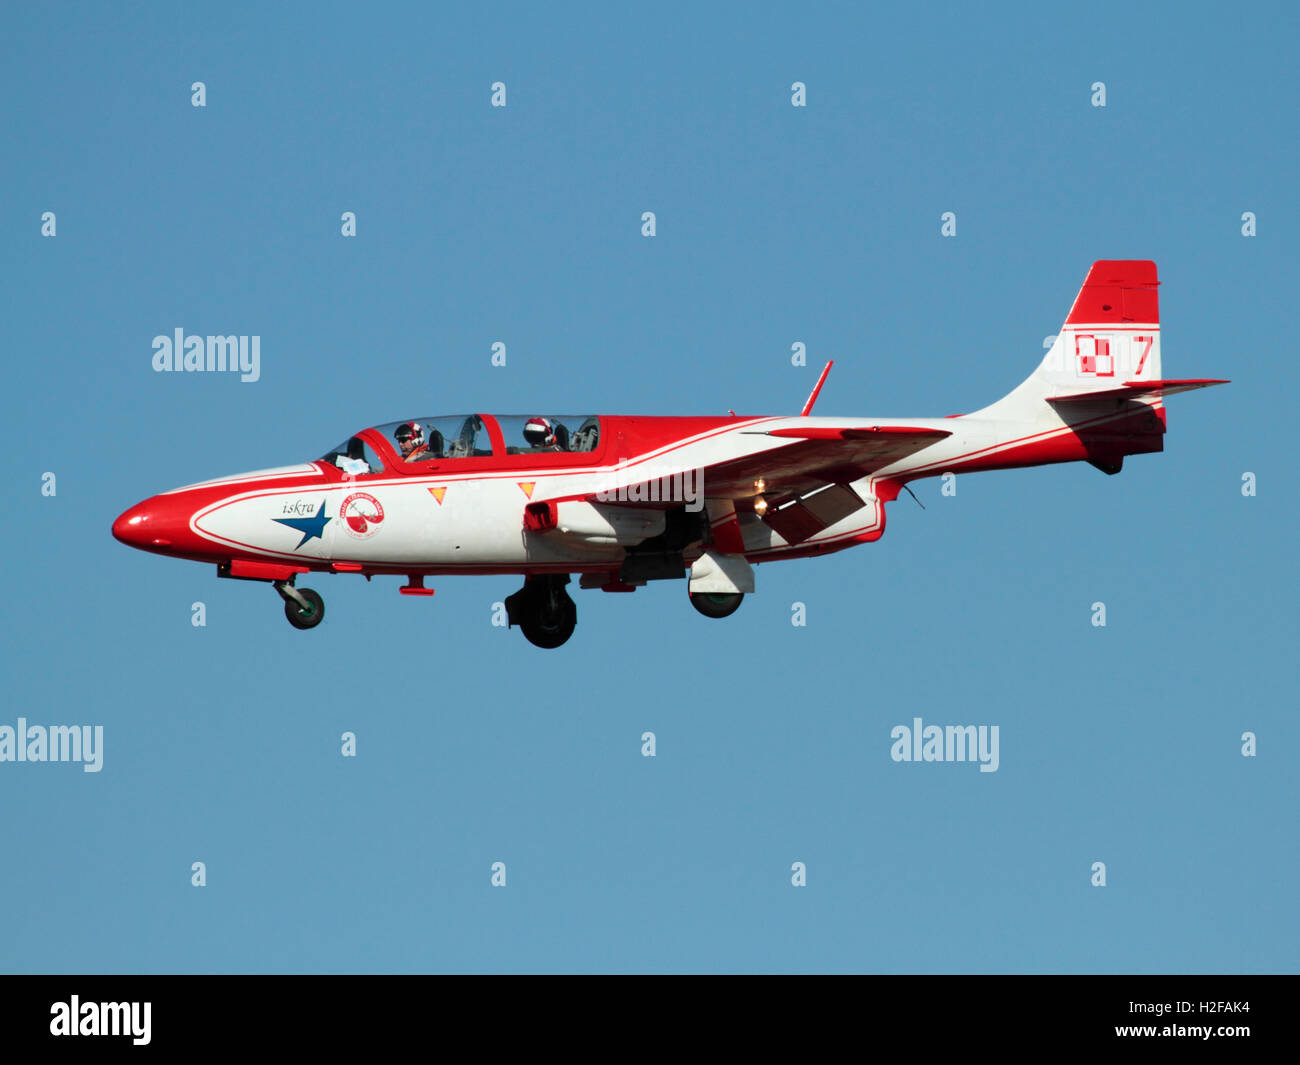 PZL TS-11 Iskra jet Trainer Flugzeug des Polnischen Air Force aerobatic Team Iskry Bialo-Czerwone (weiße und rote Funken) Stockfoto